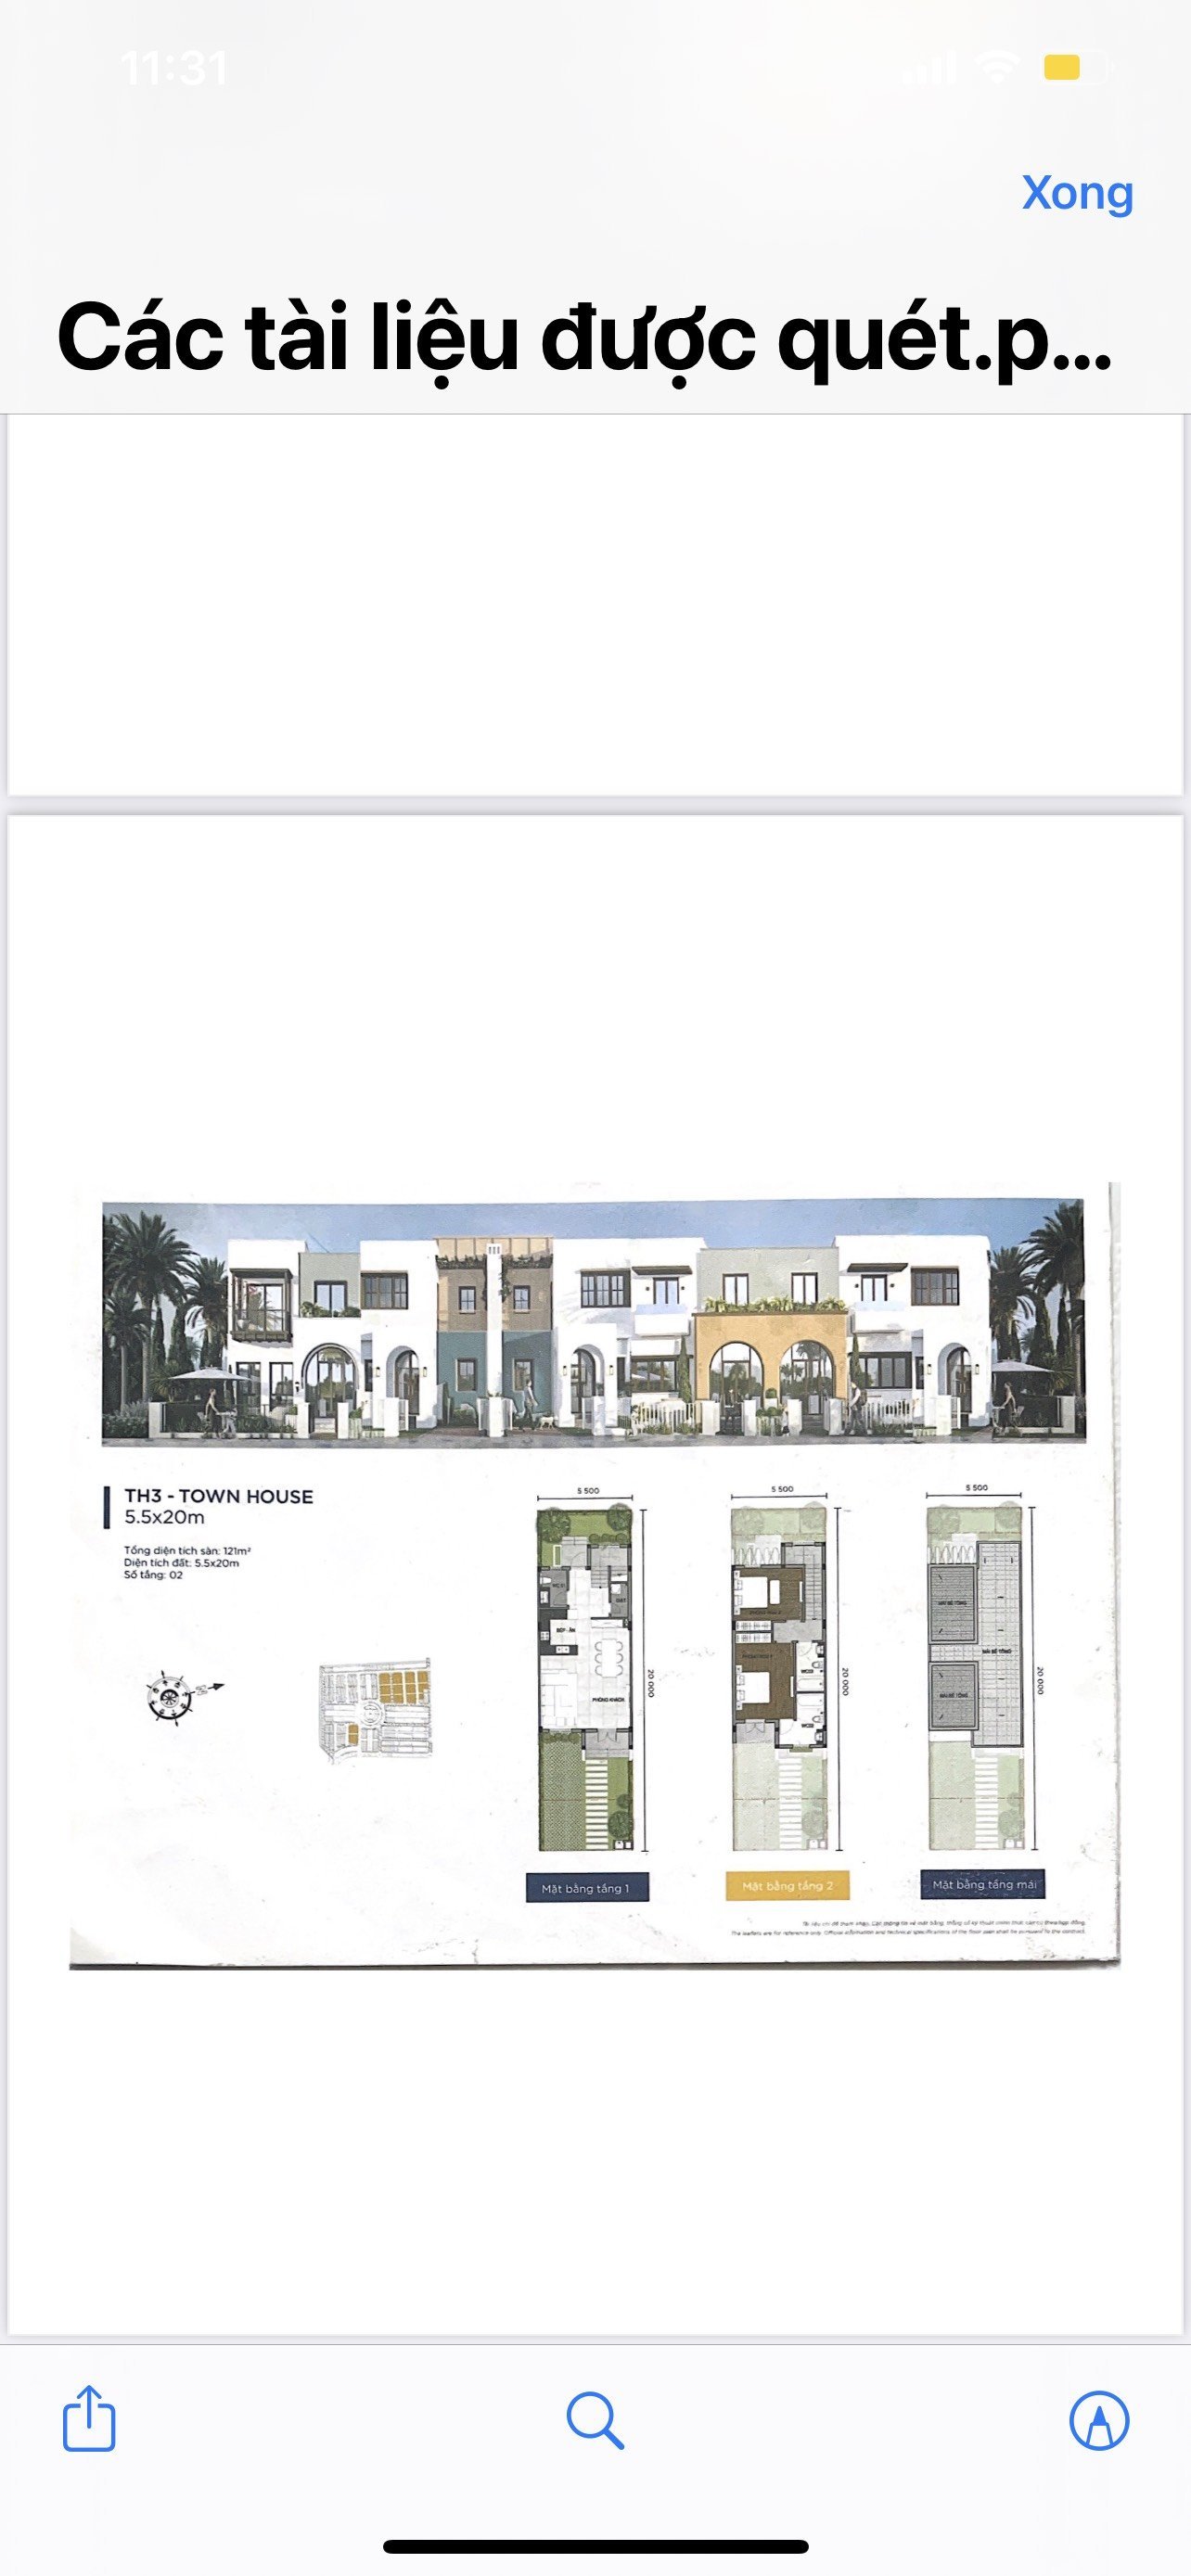 Cần bán nhà phố thuộc dự án Novaword Phan Thiết - Phân khu Ocean Residence 3